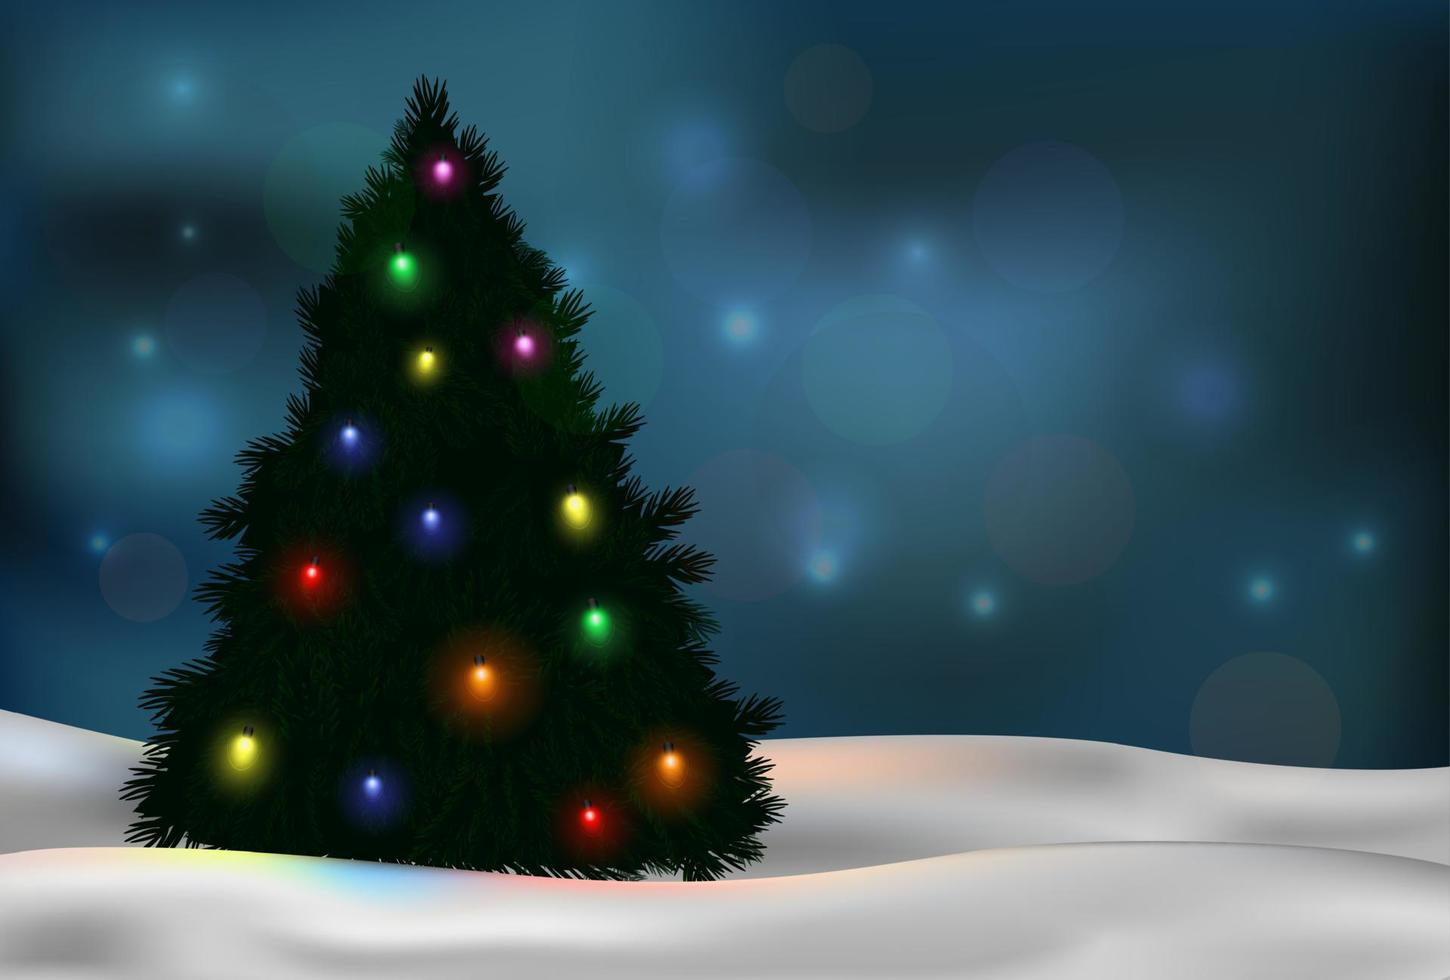 weihnachtsbaum und dekorationen auf winterhintergrund vektor